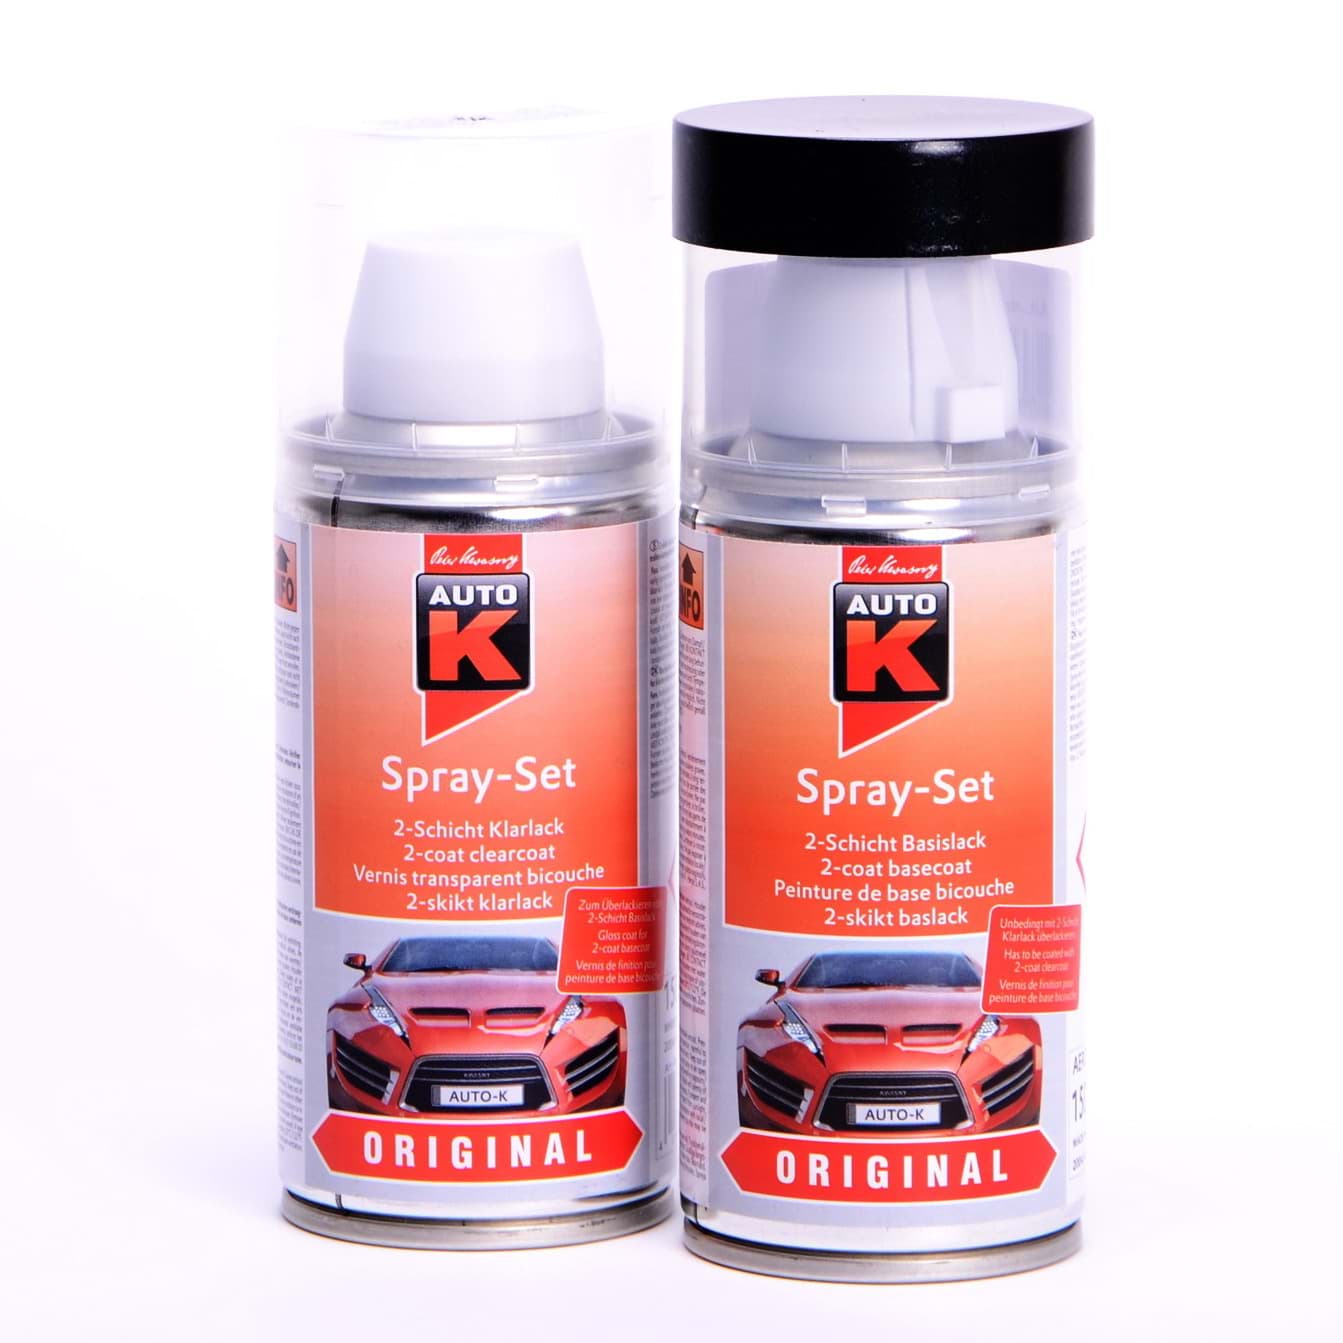 Afbeelding van Auto-K Spray-Set Autolack für Renault 389 Blanc Glacier 43376